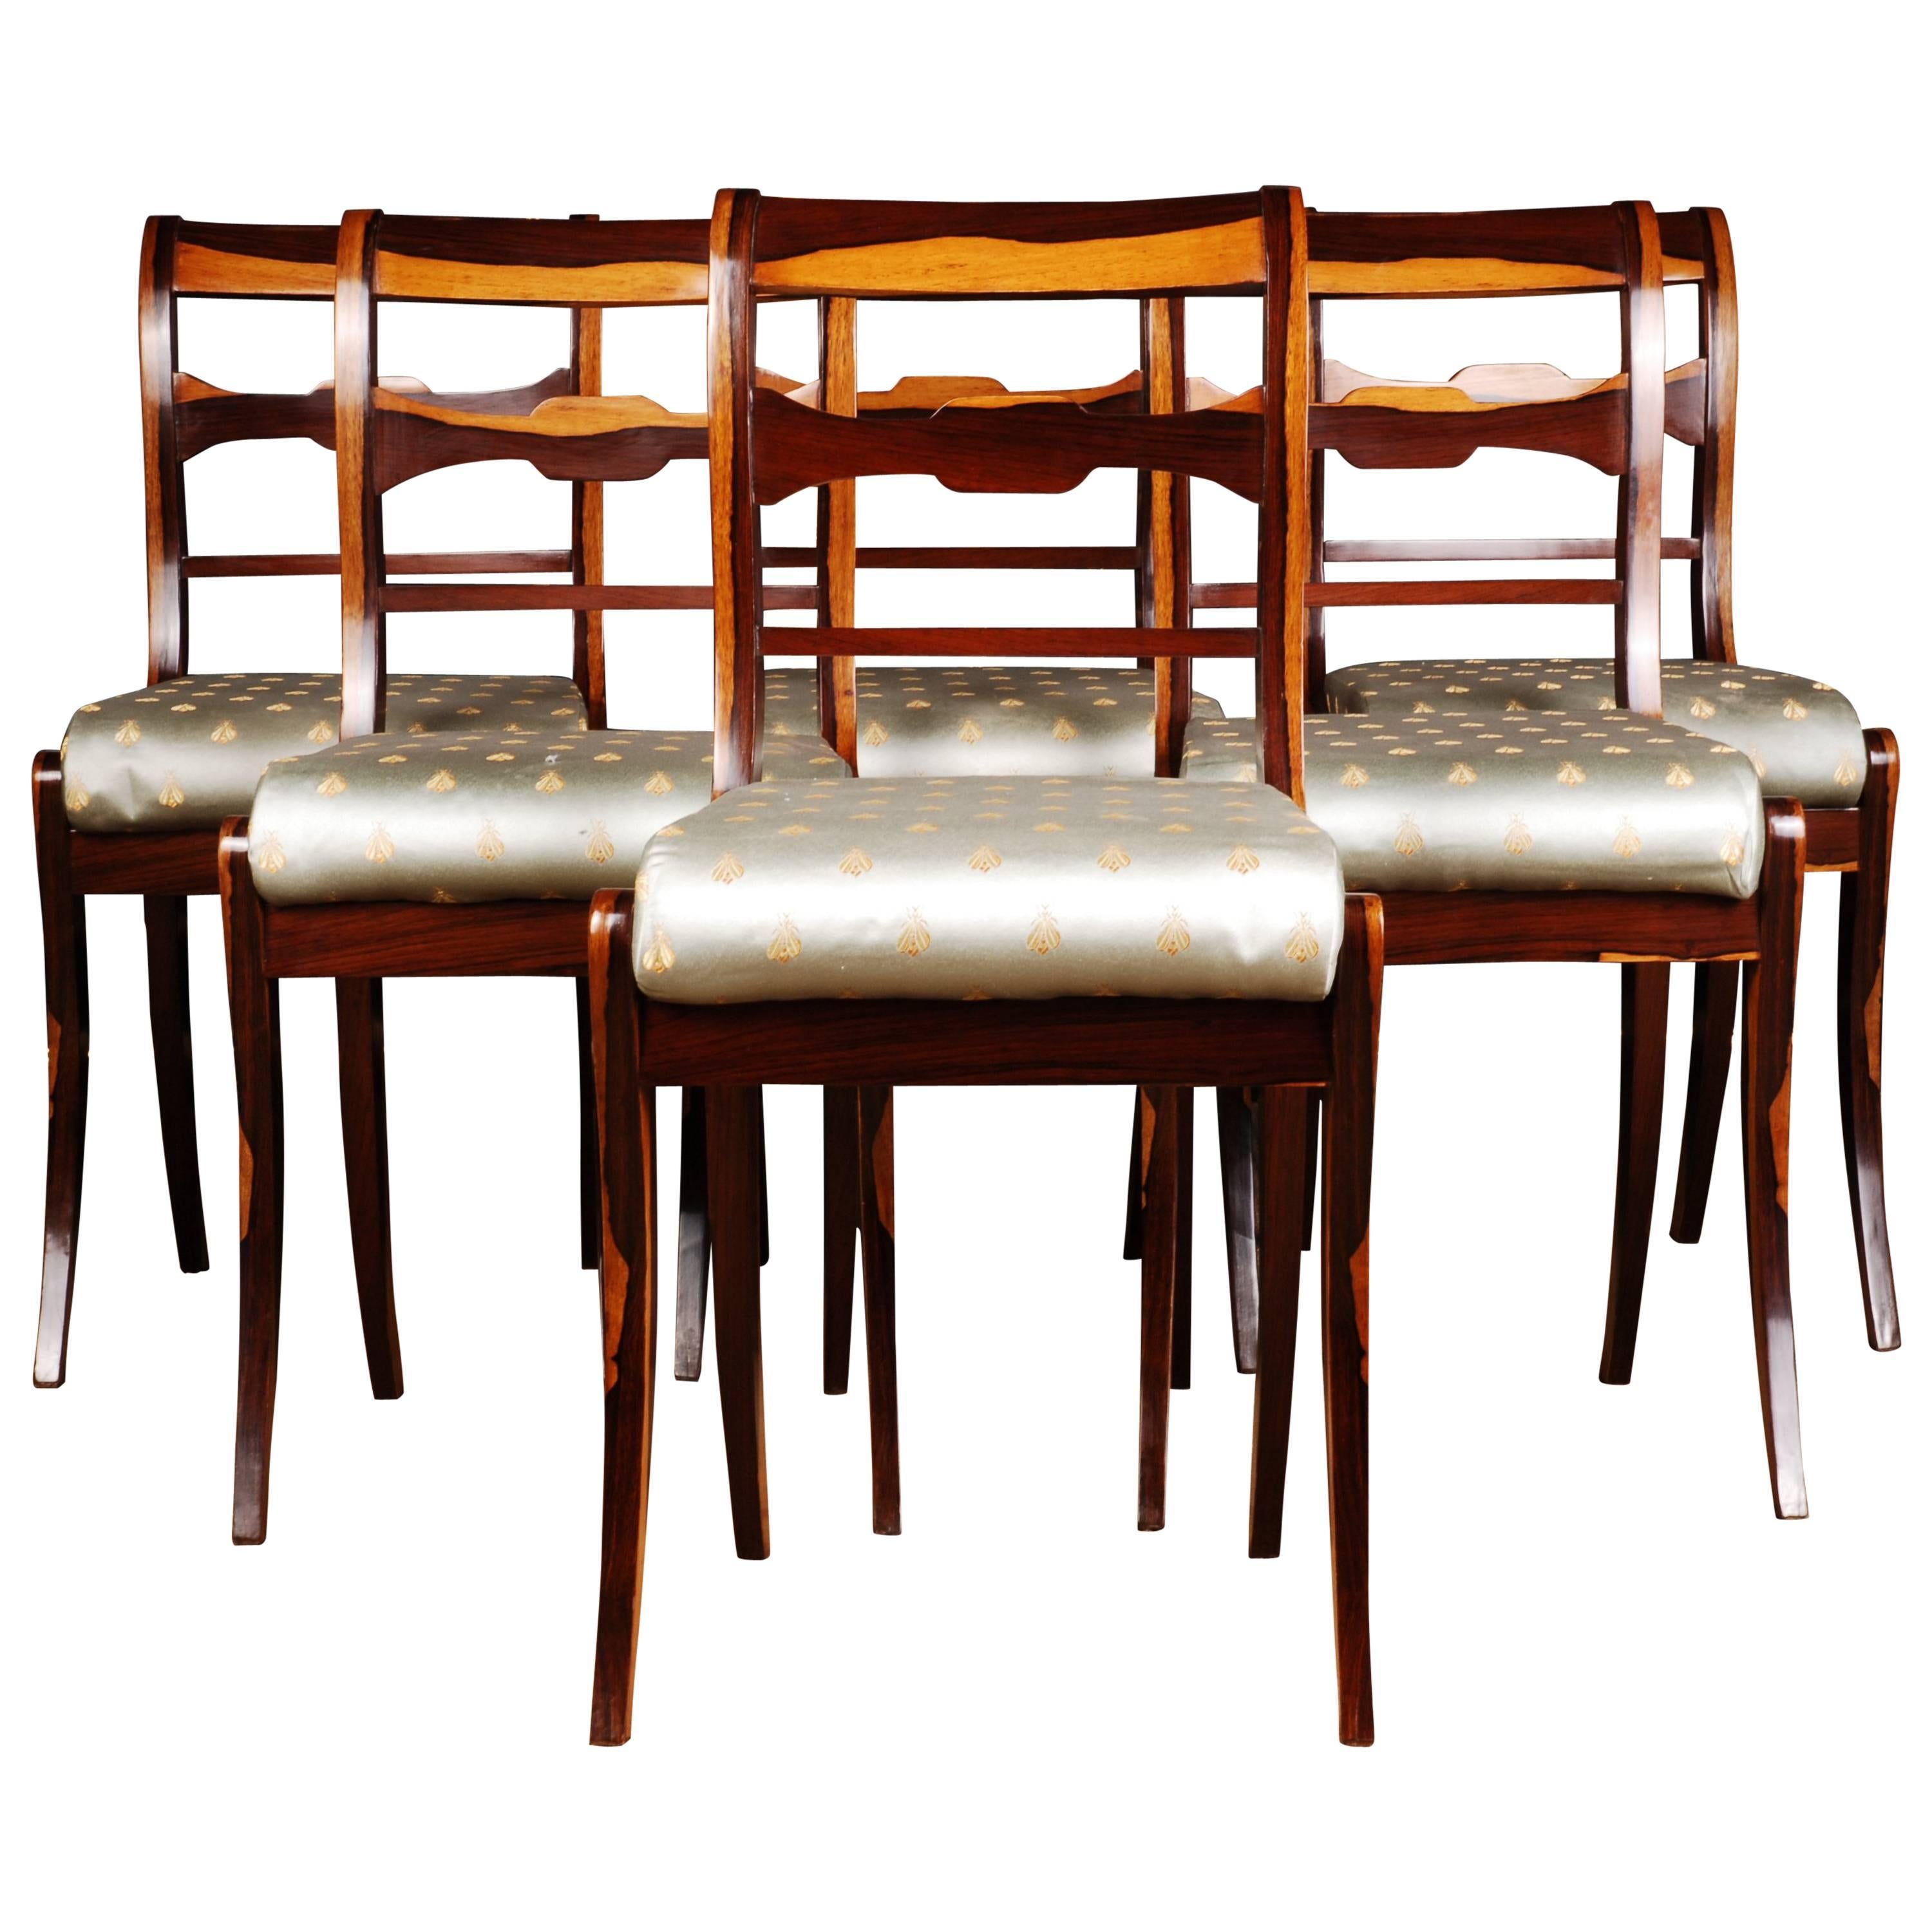 20th Century Six Chairs in the Biedermeier Style Palisander  Veneer on Beechwood